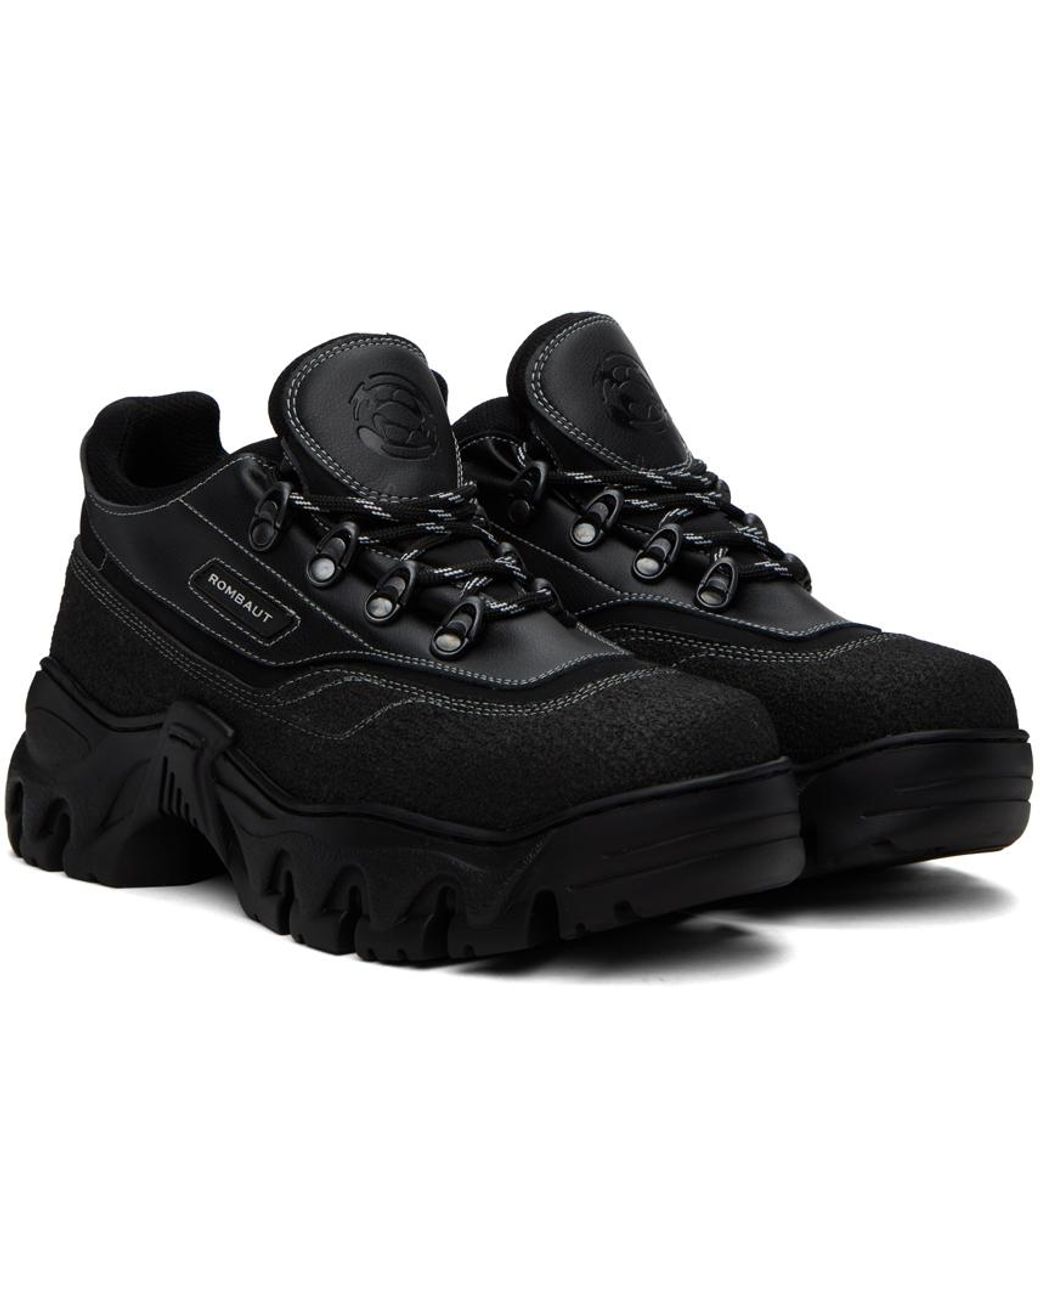 Rombaut Black Boccaccio Ii Asfalto Sneakers for Men   Lyst Canada